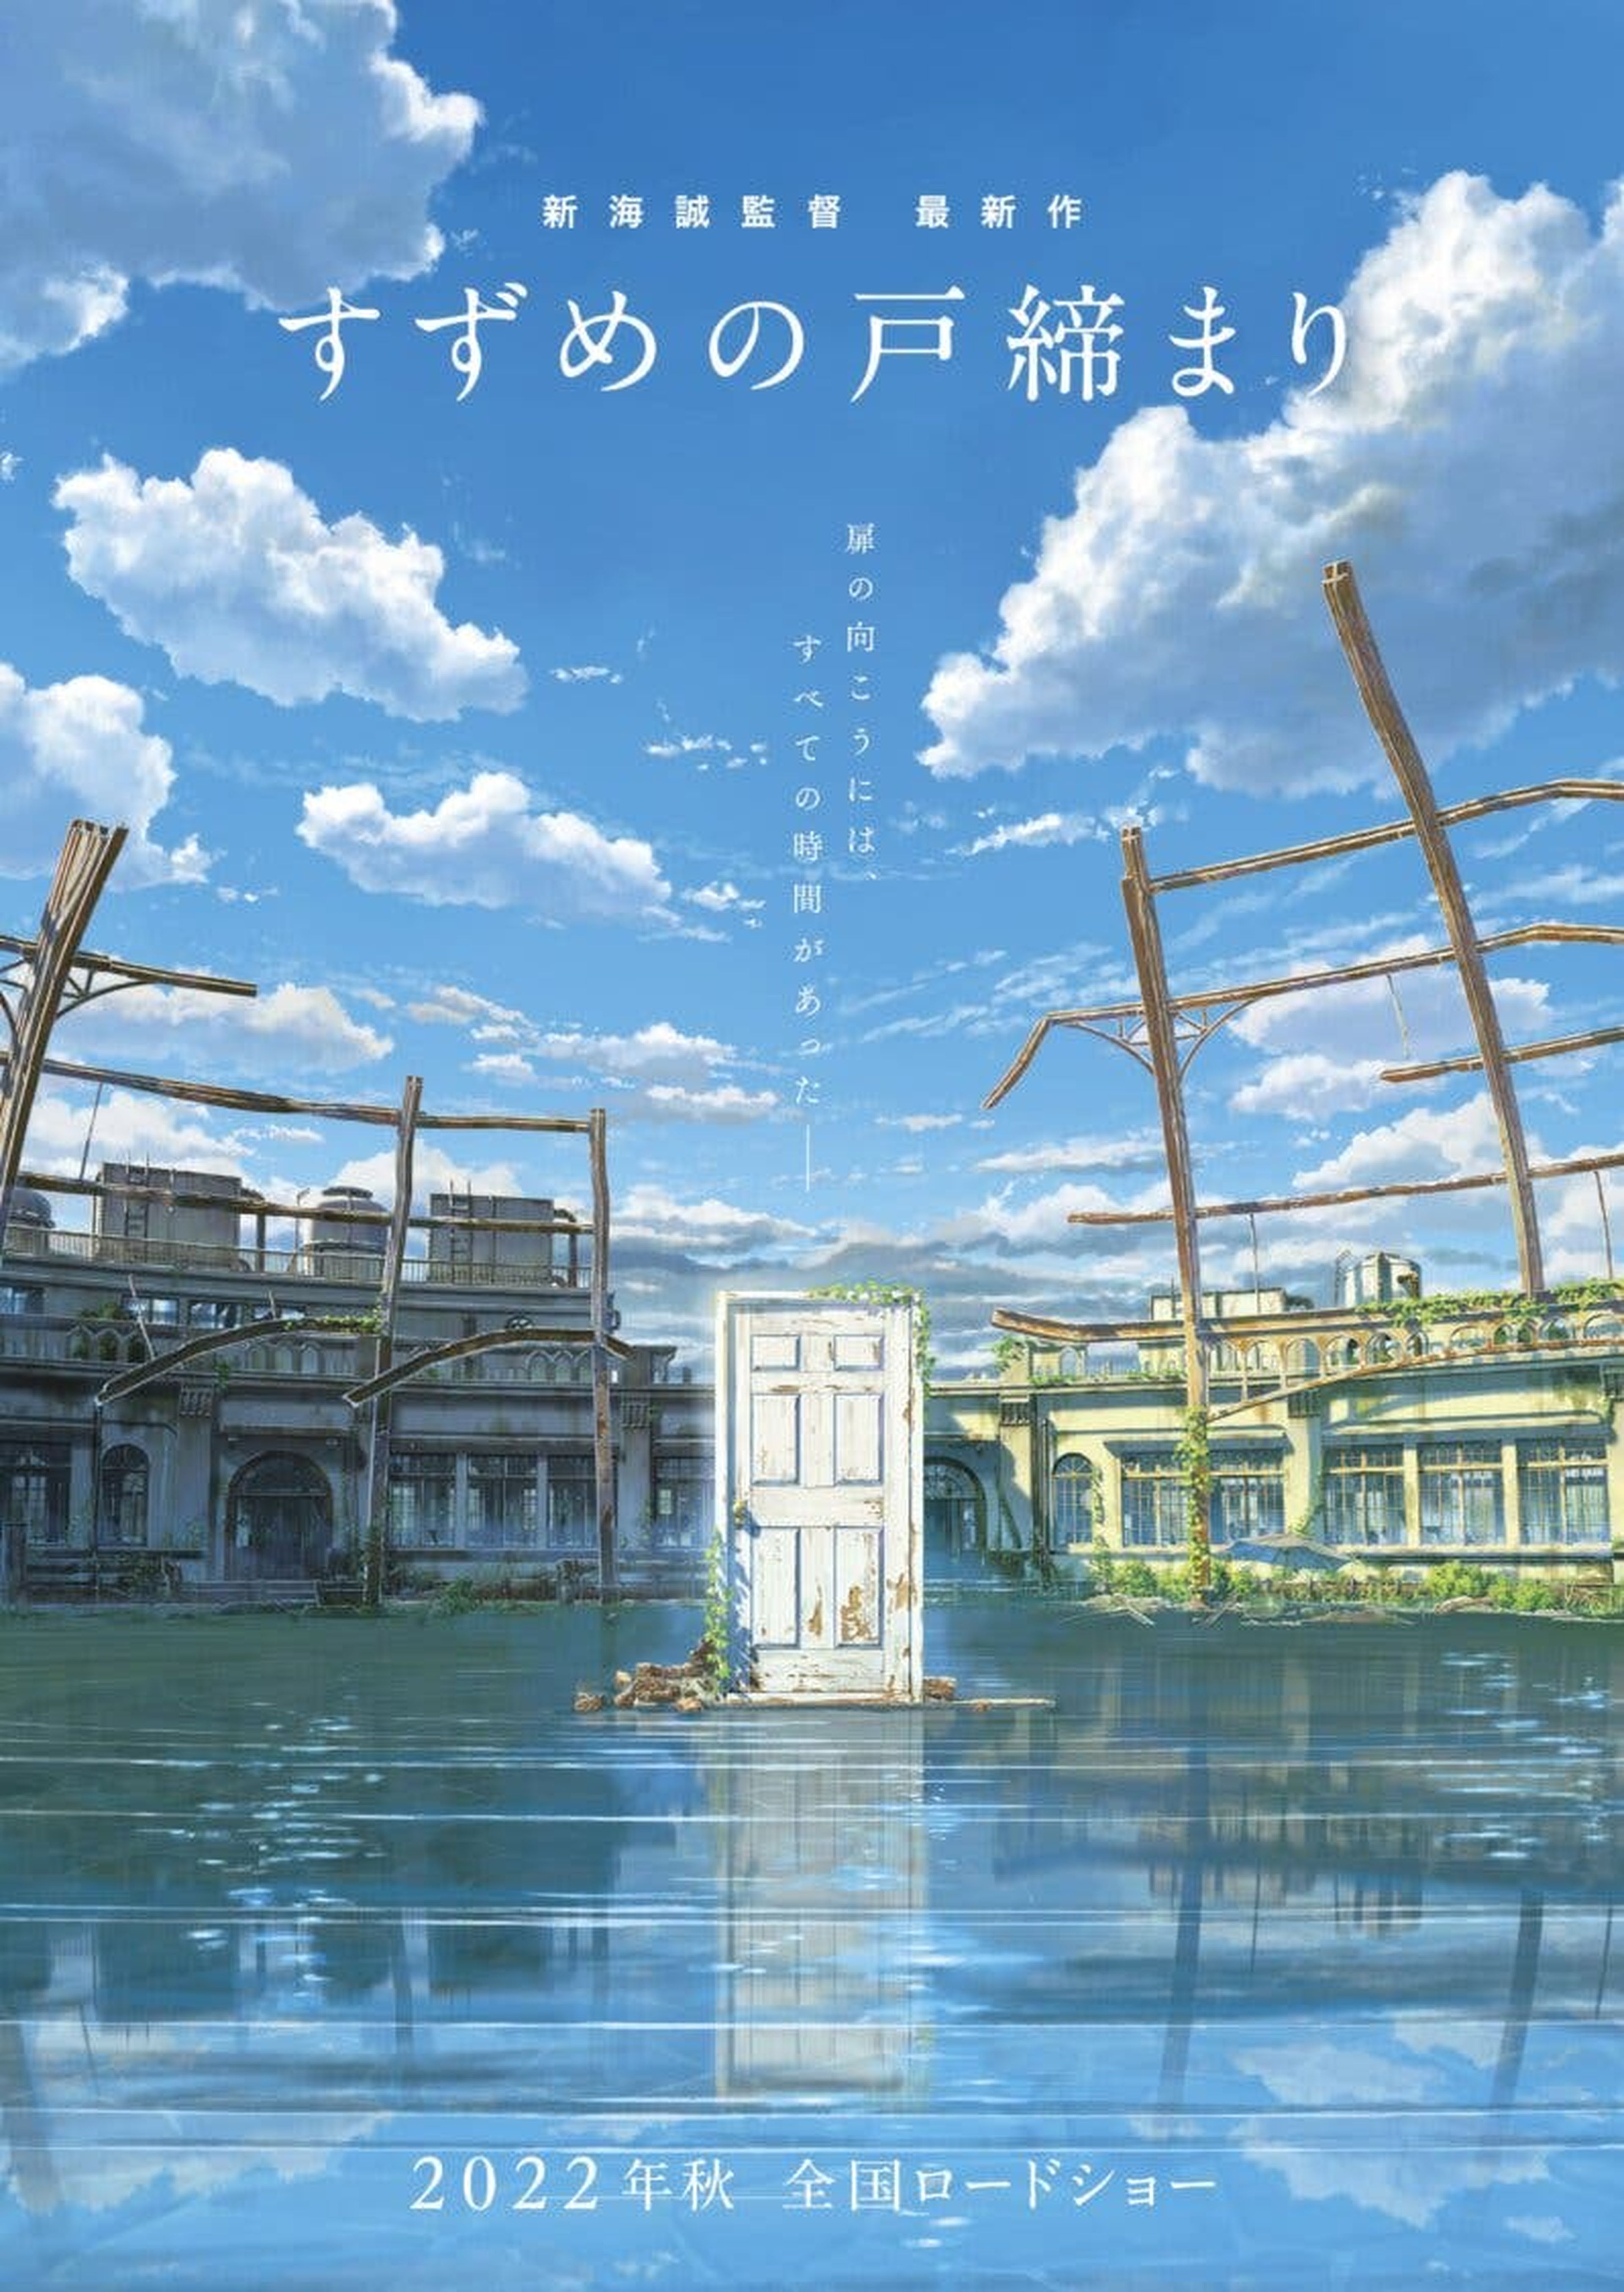 Makoto Shinkai Suzume no tojimari Suzume's Door-Locking